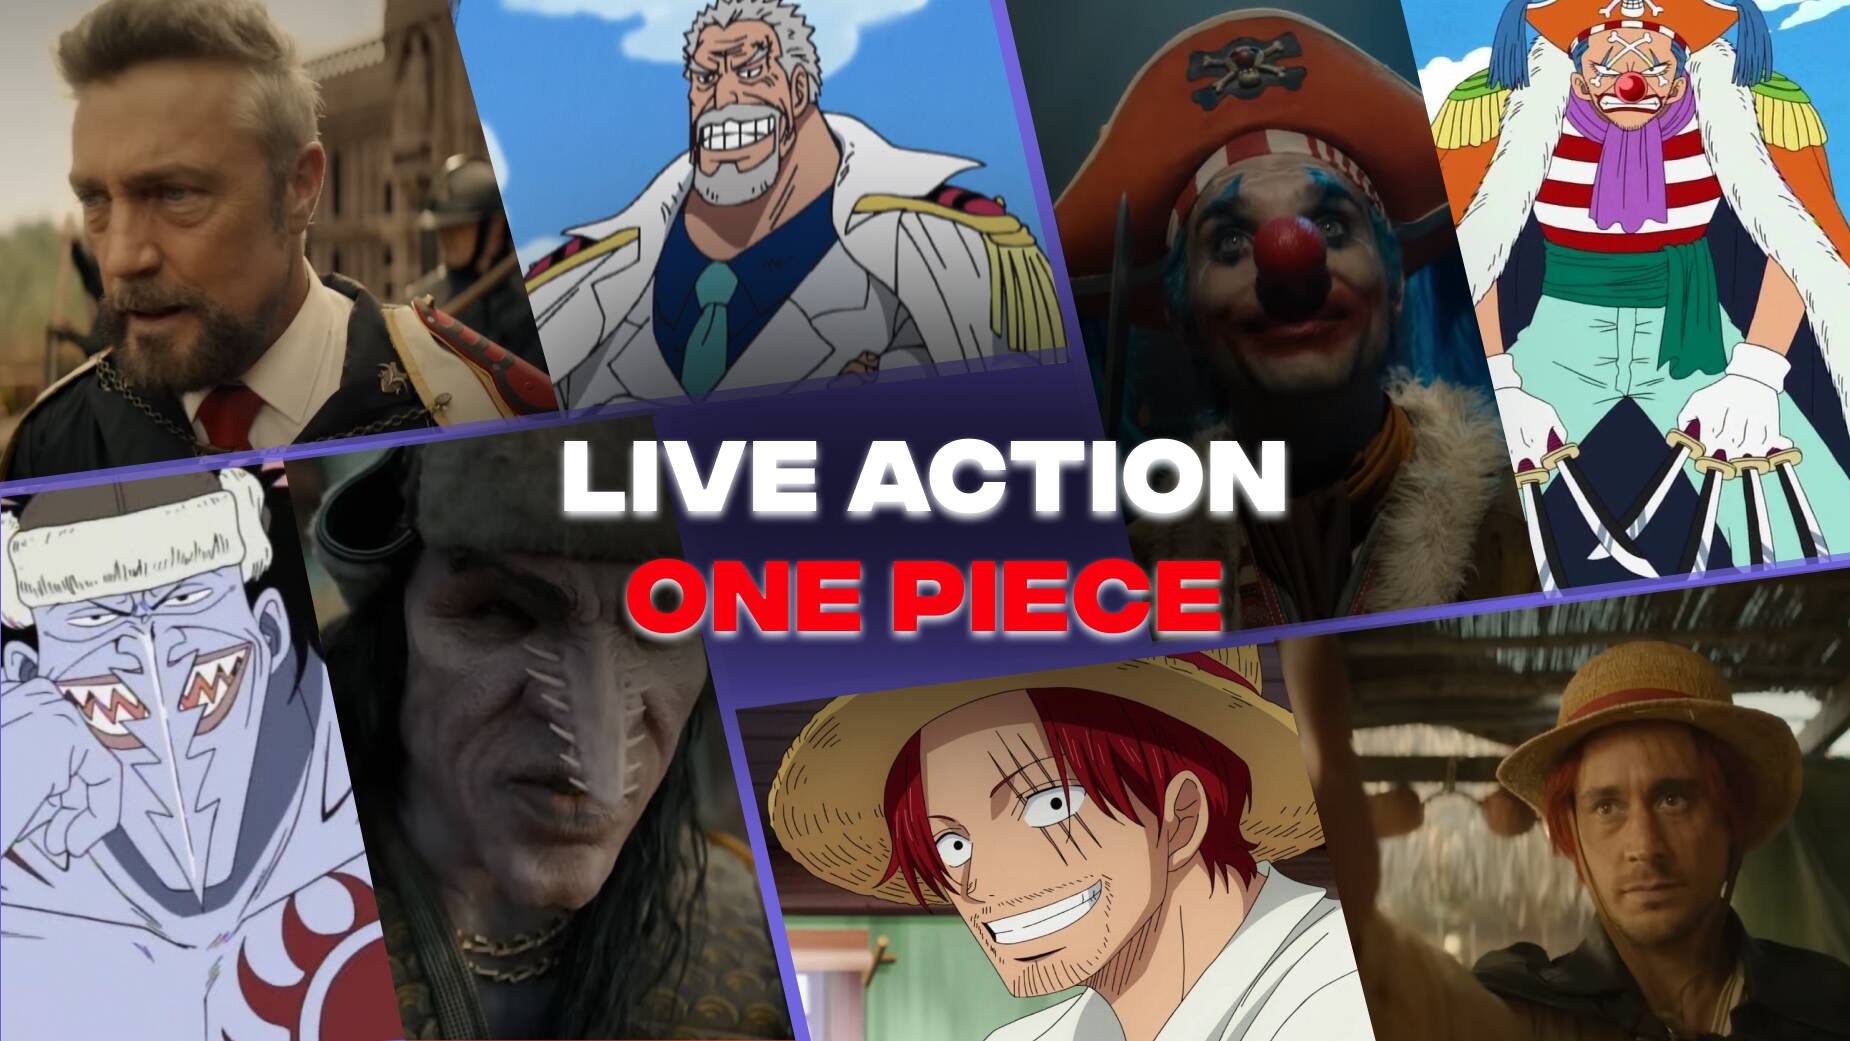 Le live action One Piece fait débat !